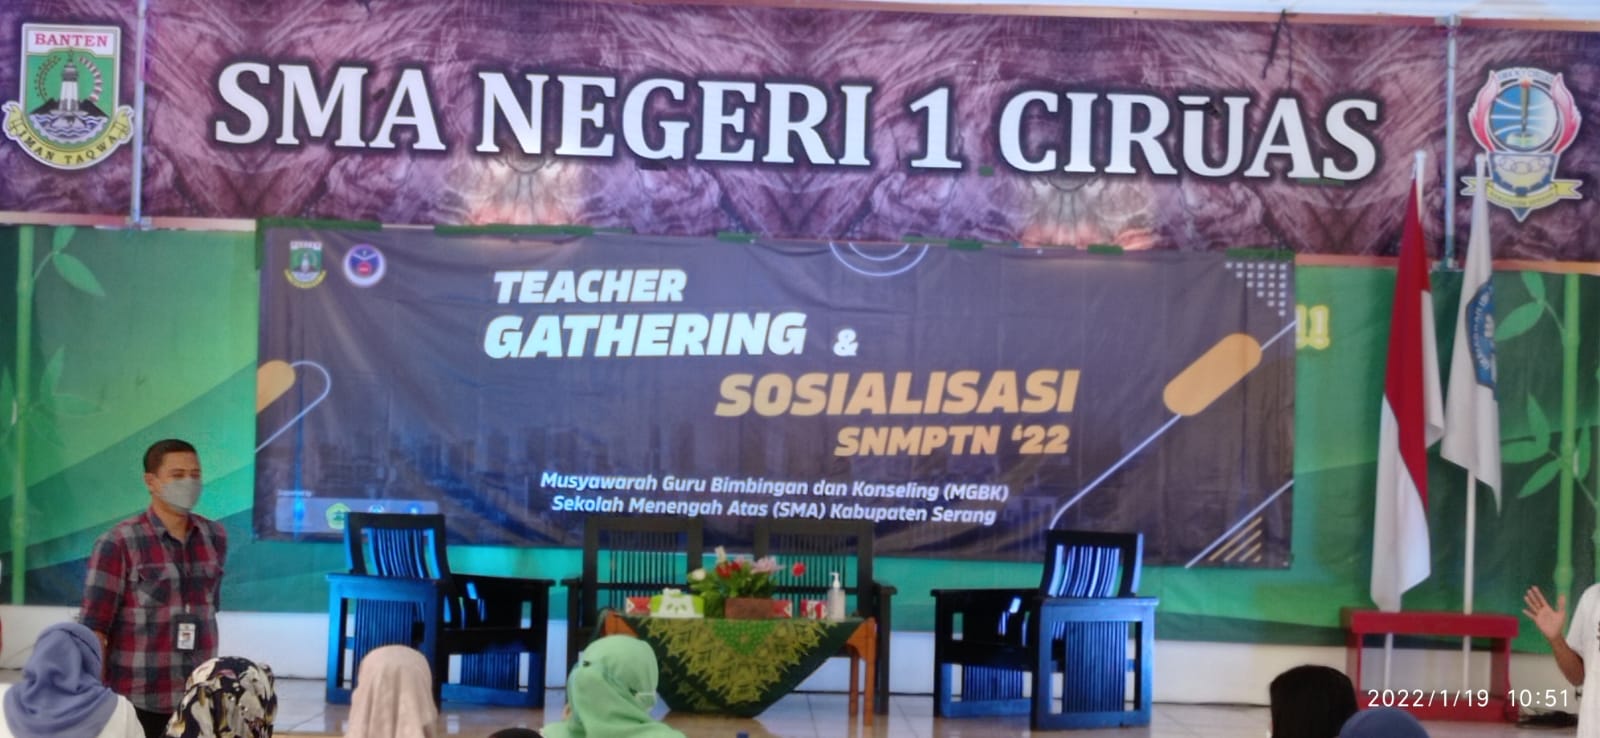 Teacher Gathering & Sosisalisasi SNMPTN 2022 SMA Negeri 1 Ciruas, Musyawarah Guru Bimbingan dan Konseling (MGBK) Sekolah Menengah Atas (SMA) Kabupaten Serang